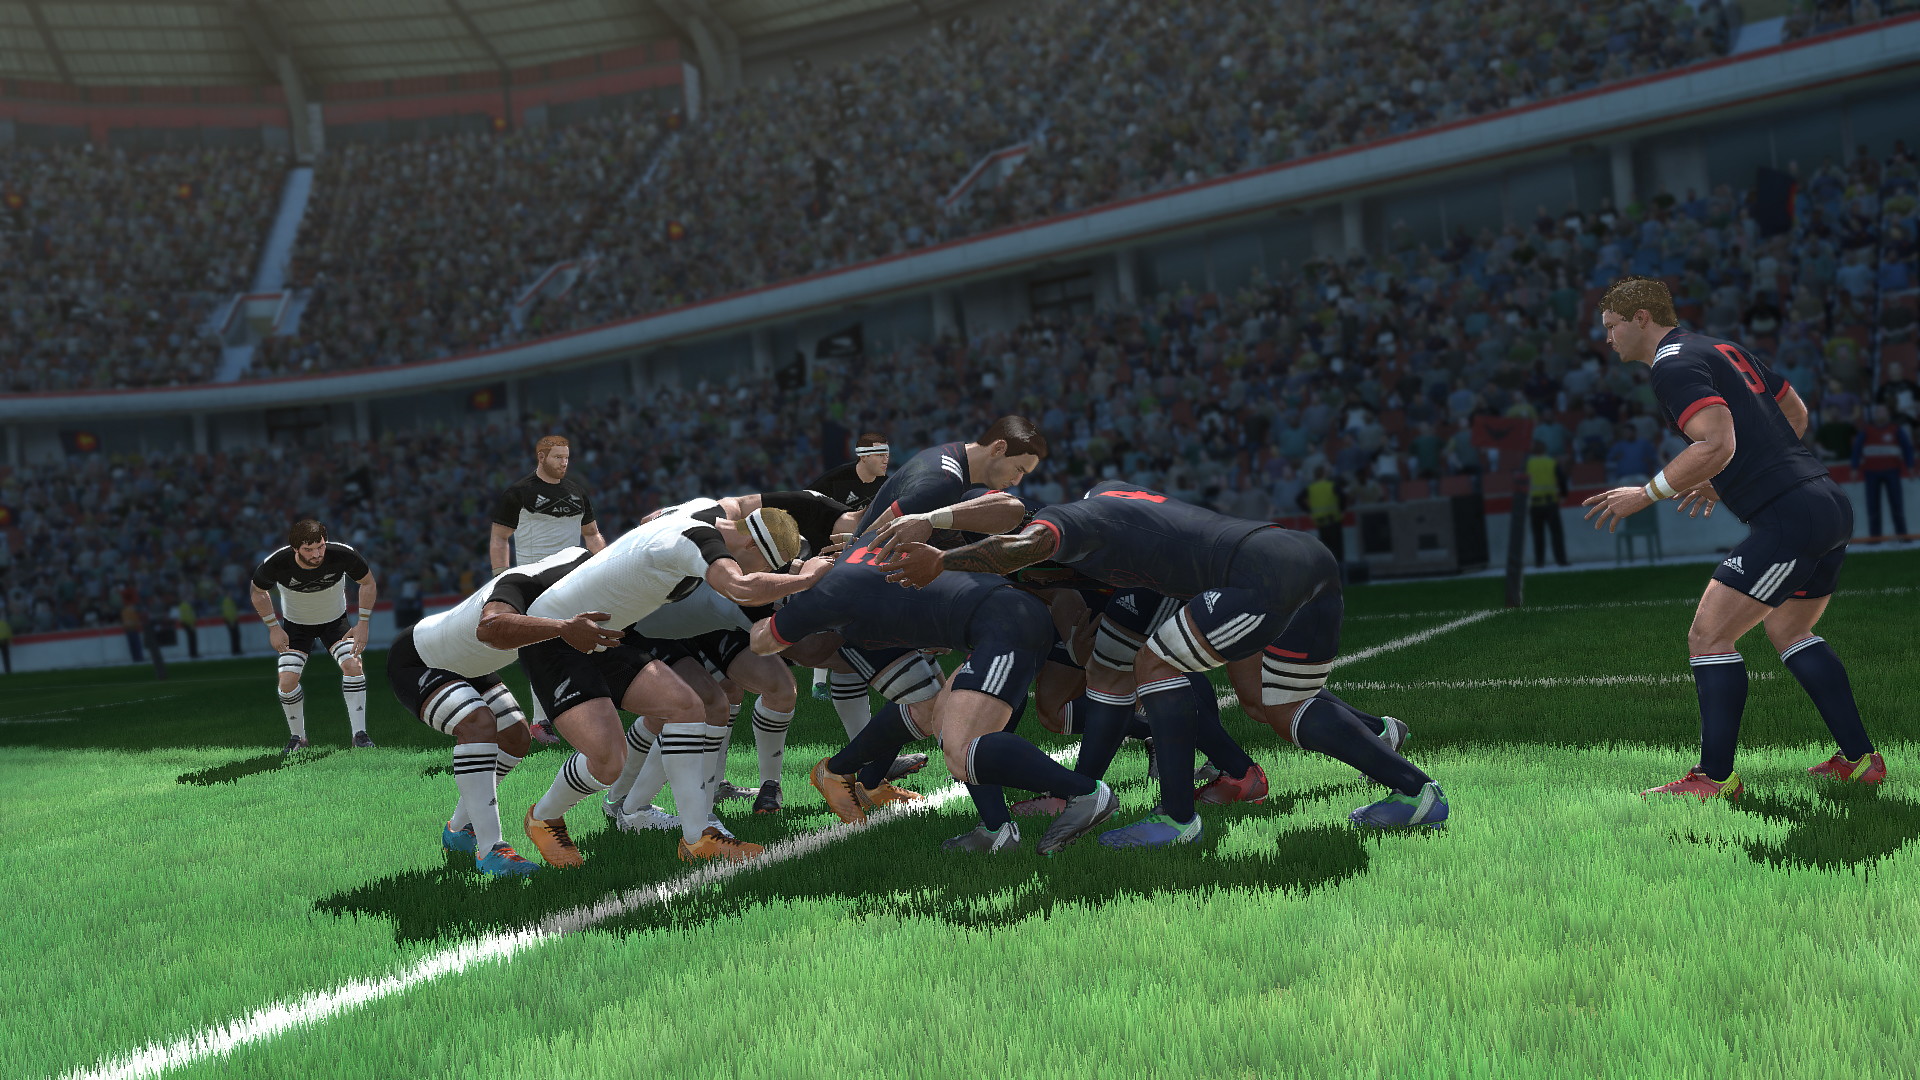 Rugby 18 - screenshot 2